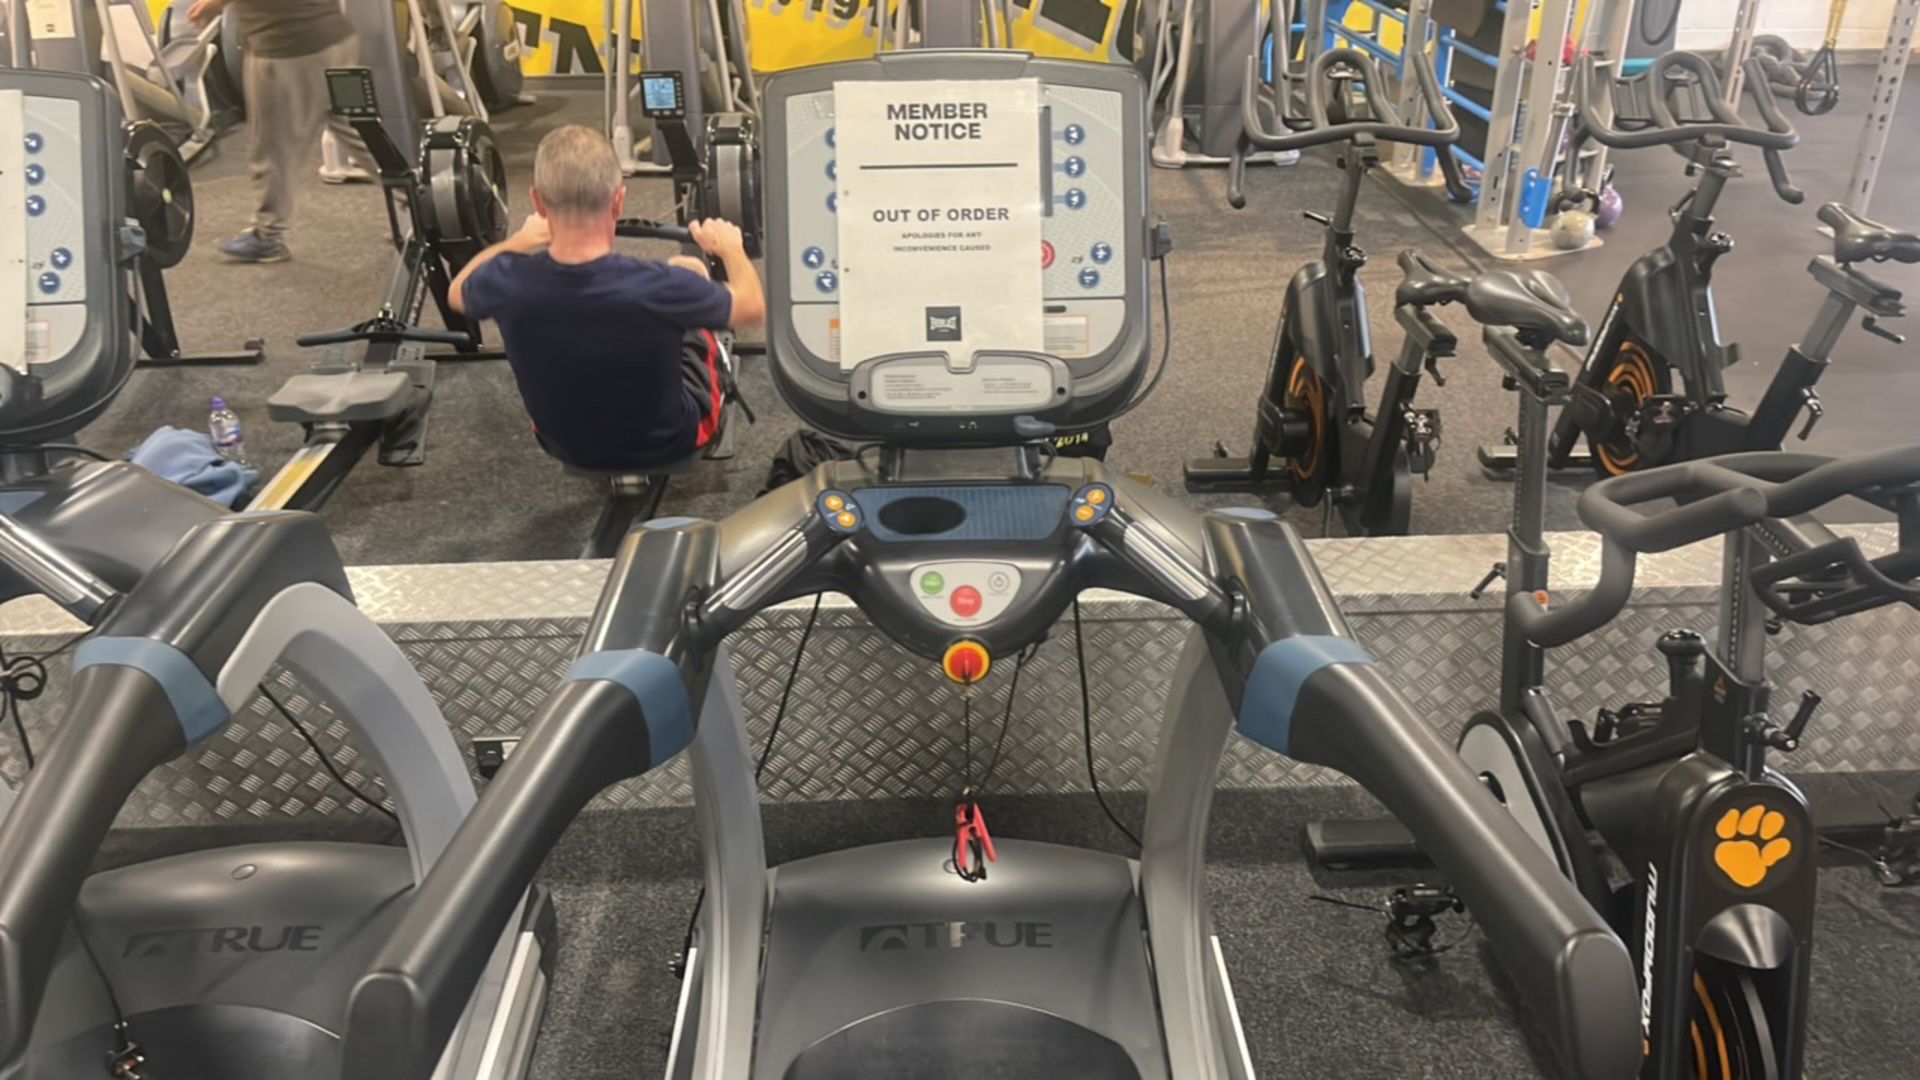 True Fitness Treadmill - Image 4 of 5